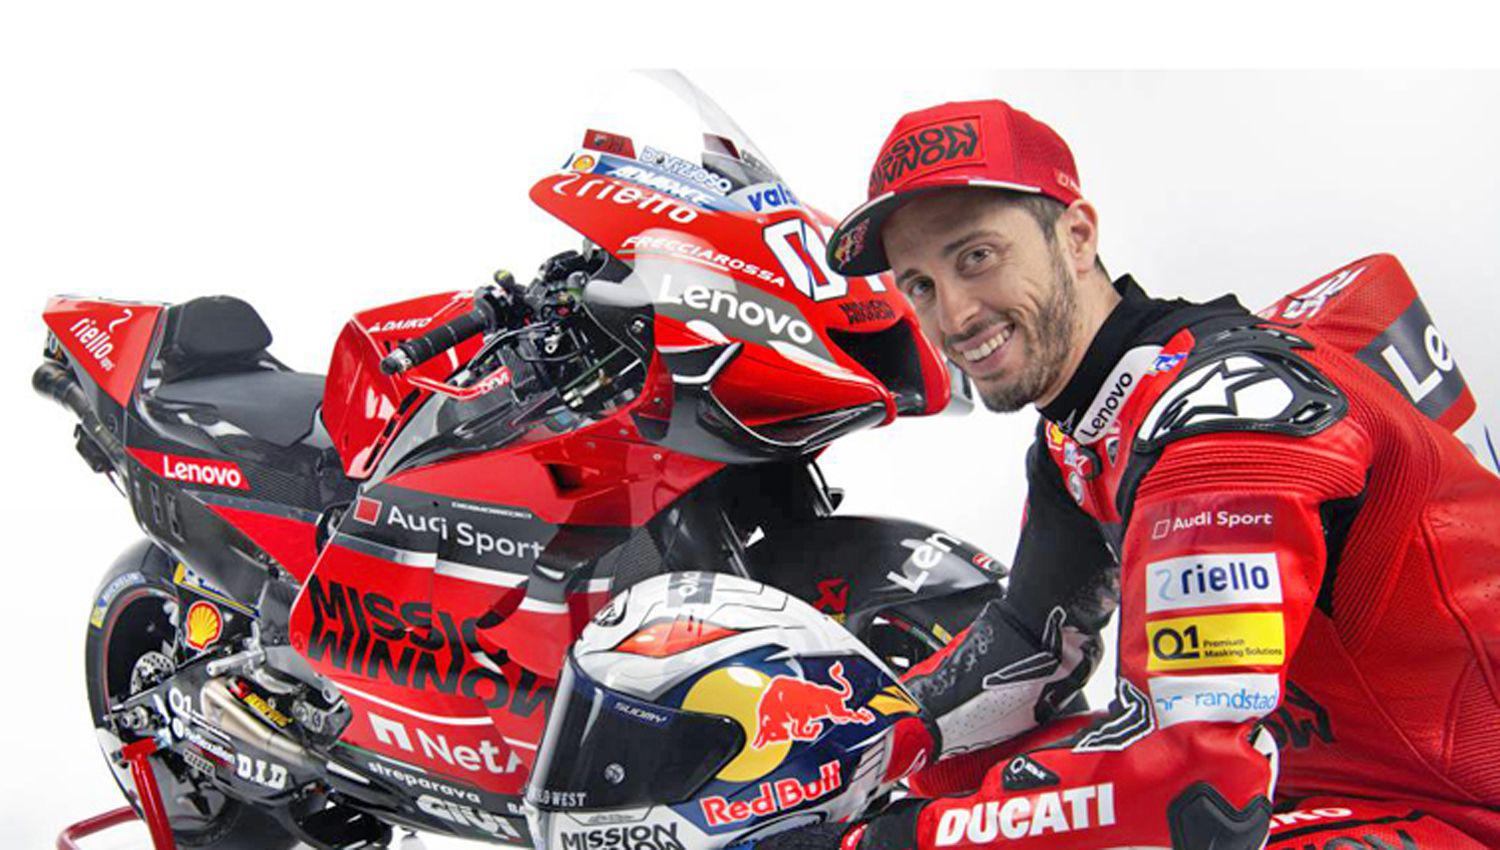 PROTAGONISTA Andrea Dovizioso est� m�s que ansioso para saltar a la pista a defender los colores de Ducati
